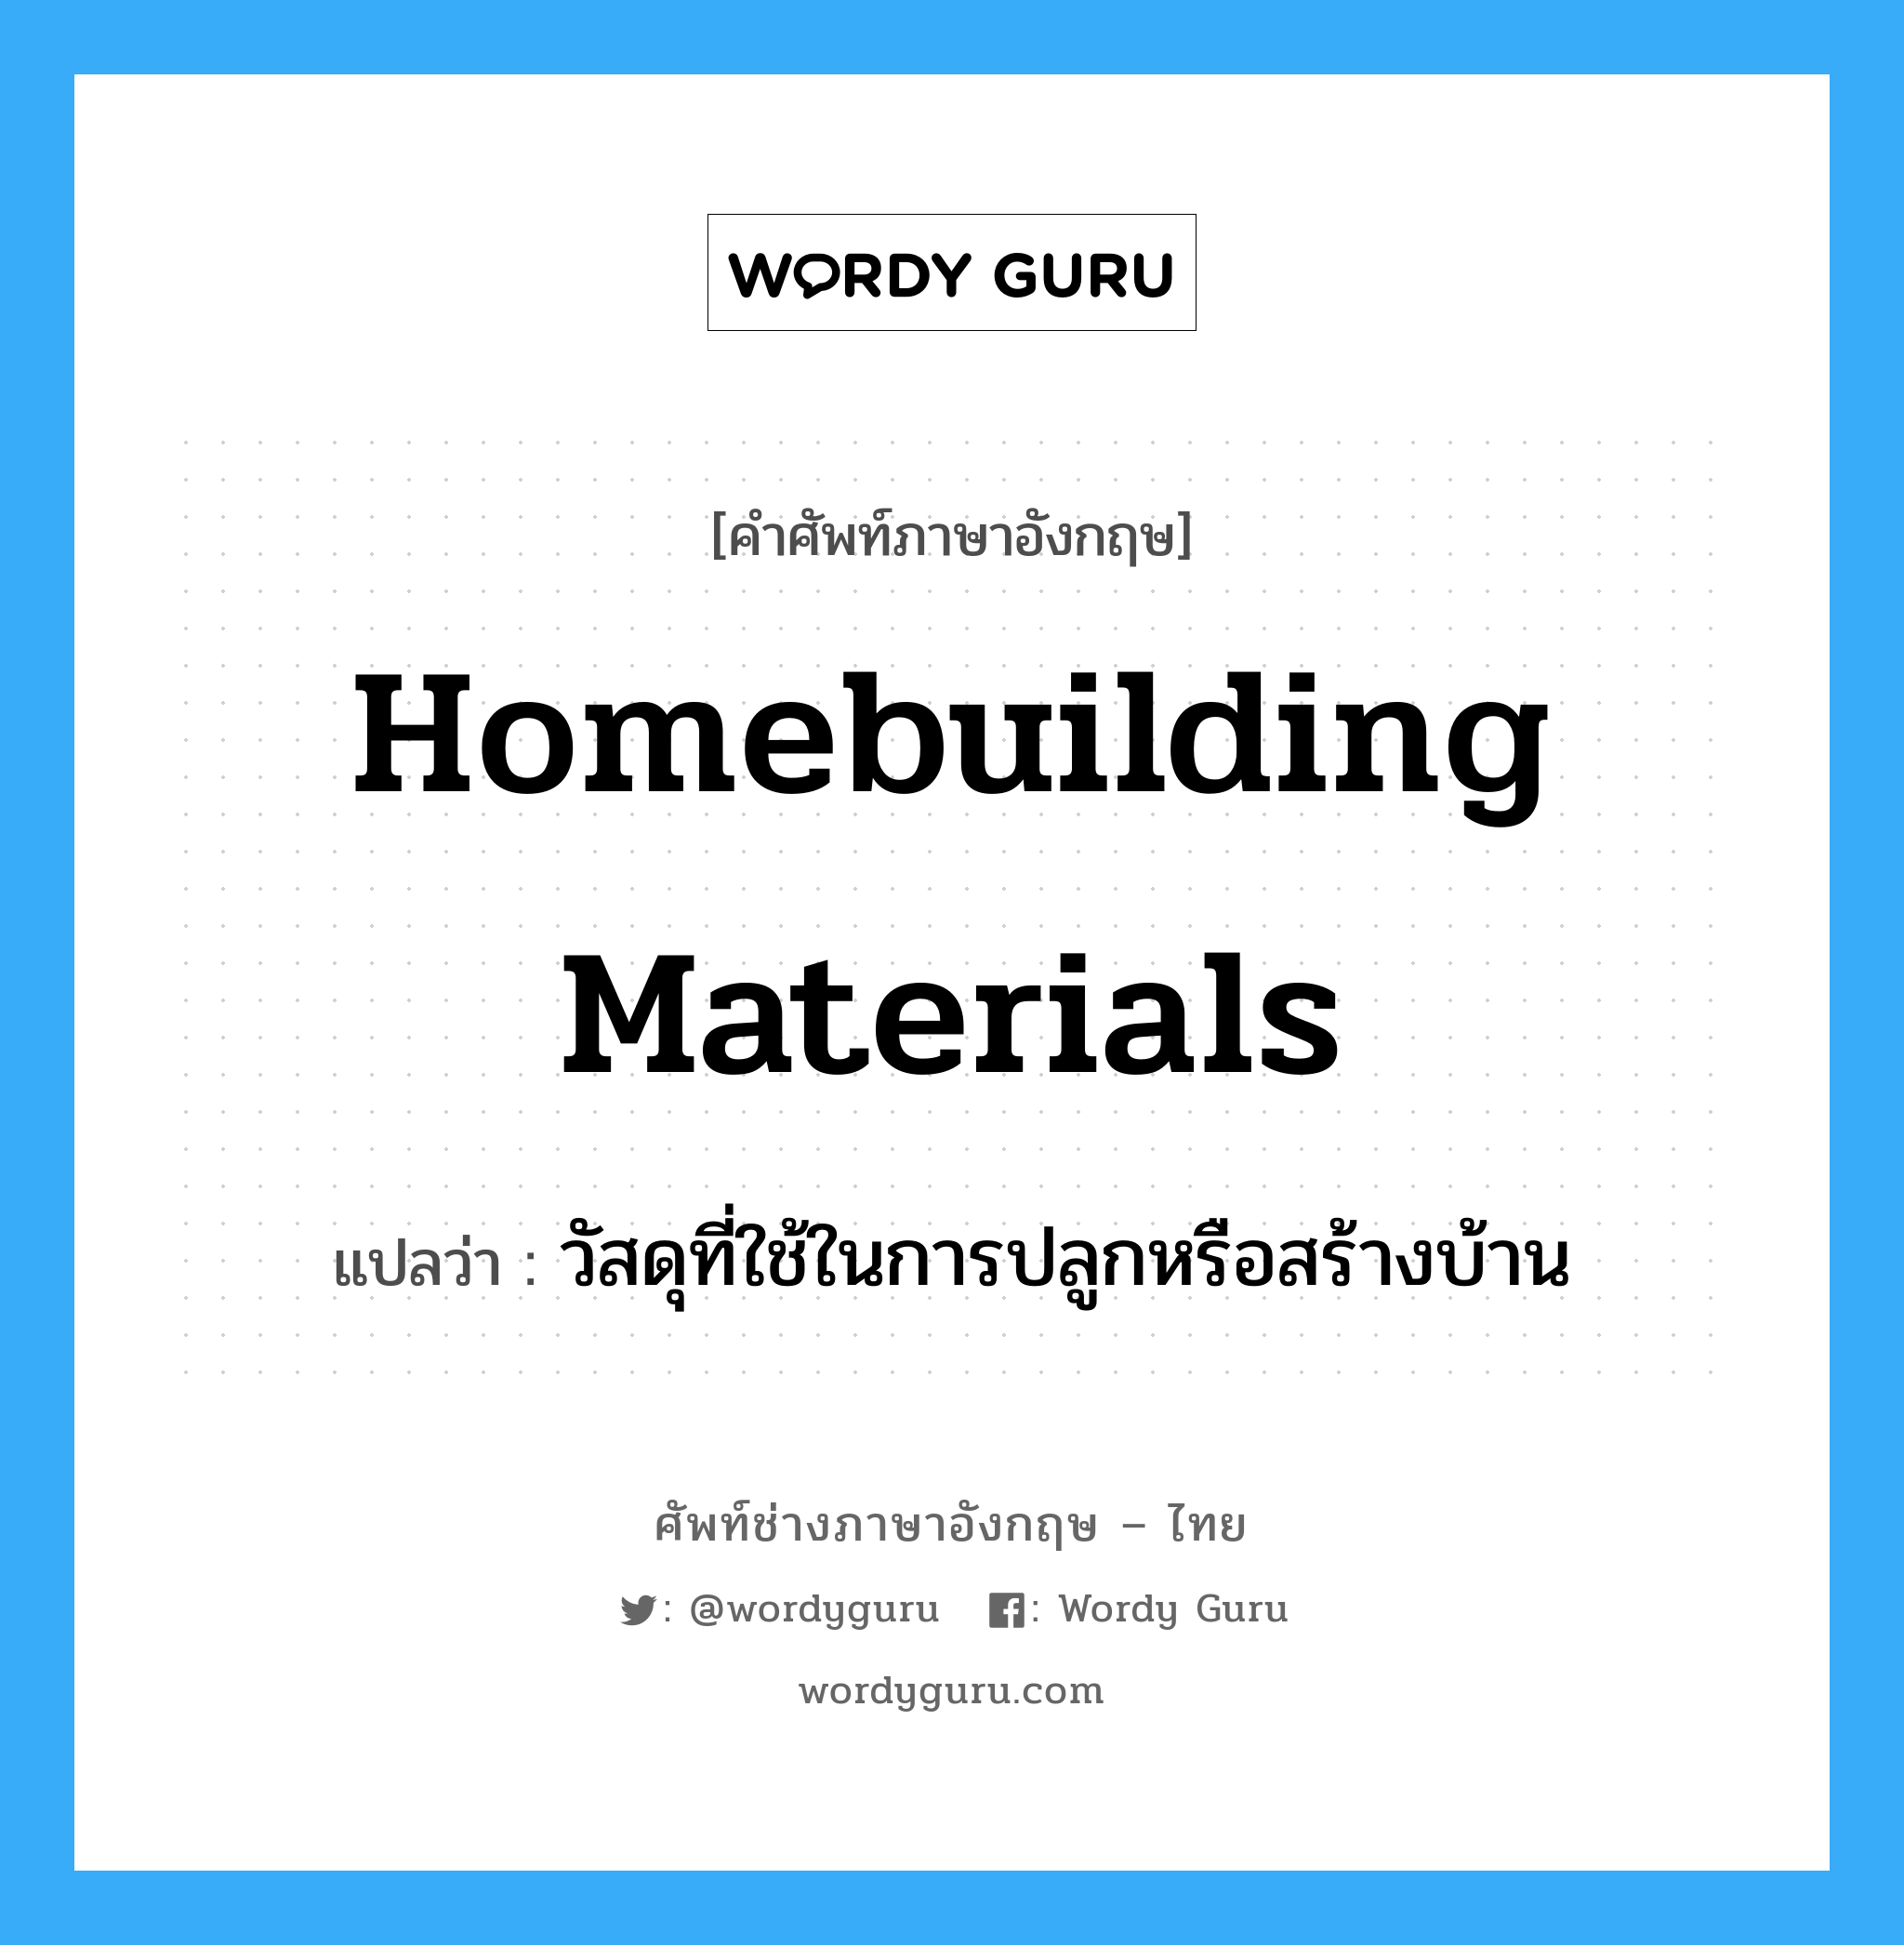 วัสดุที่ใช้ในการปลูกหรือสร้างบ้าน ภาษาอังกฤษ?, คำศัพท์ช่างภาษาอังกฤษ - ไทย วัสดุที่ใช้ในการปลูกหรือสร้างบ้าน คำศัพท์ภาษาอังกฤษ วัสดุที่ใช้ในการปลูกหรือสร้างบ้าน แปลว่า homebuilding materials